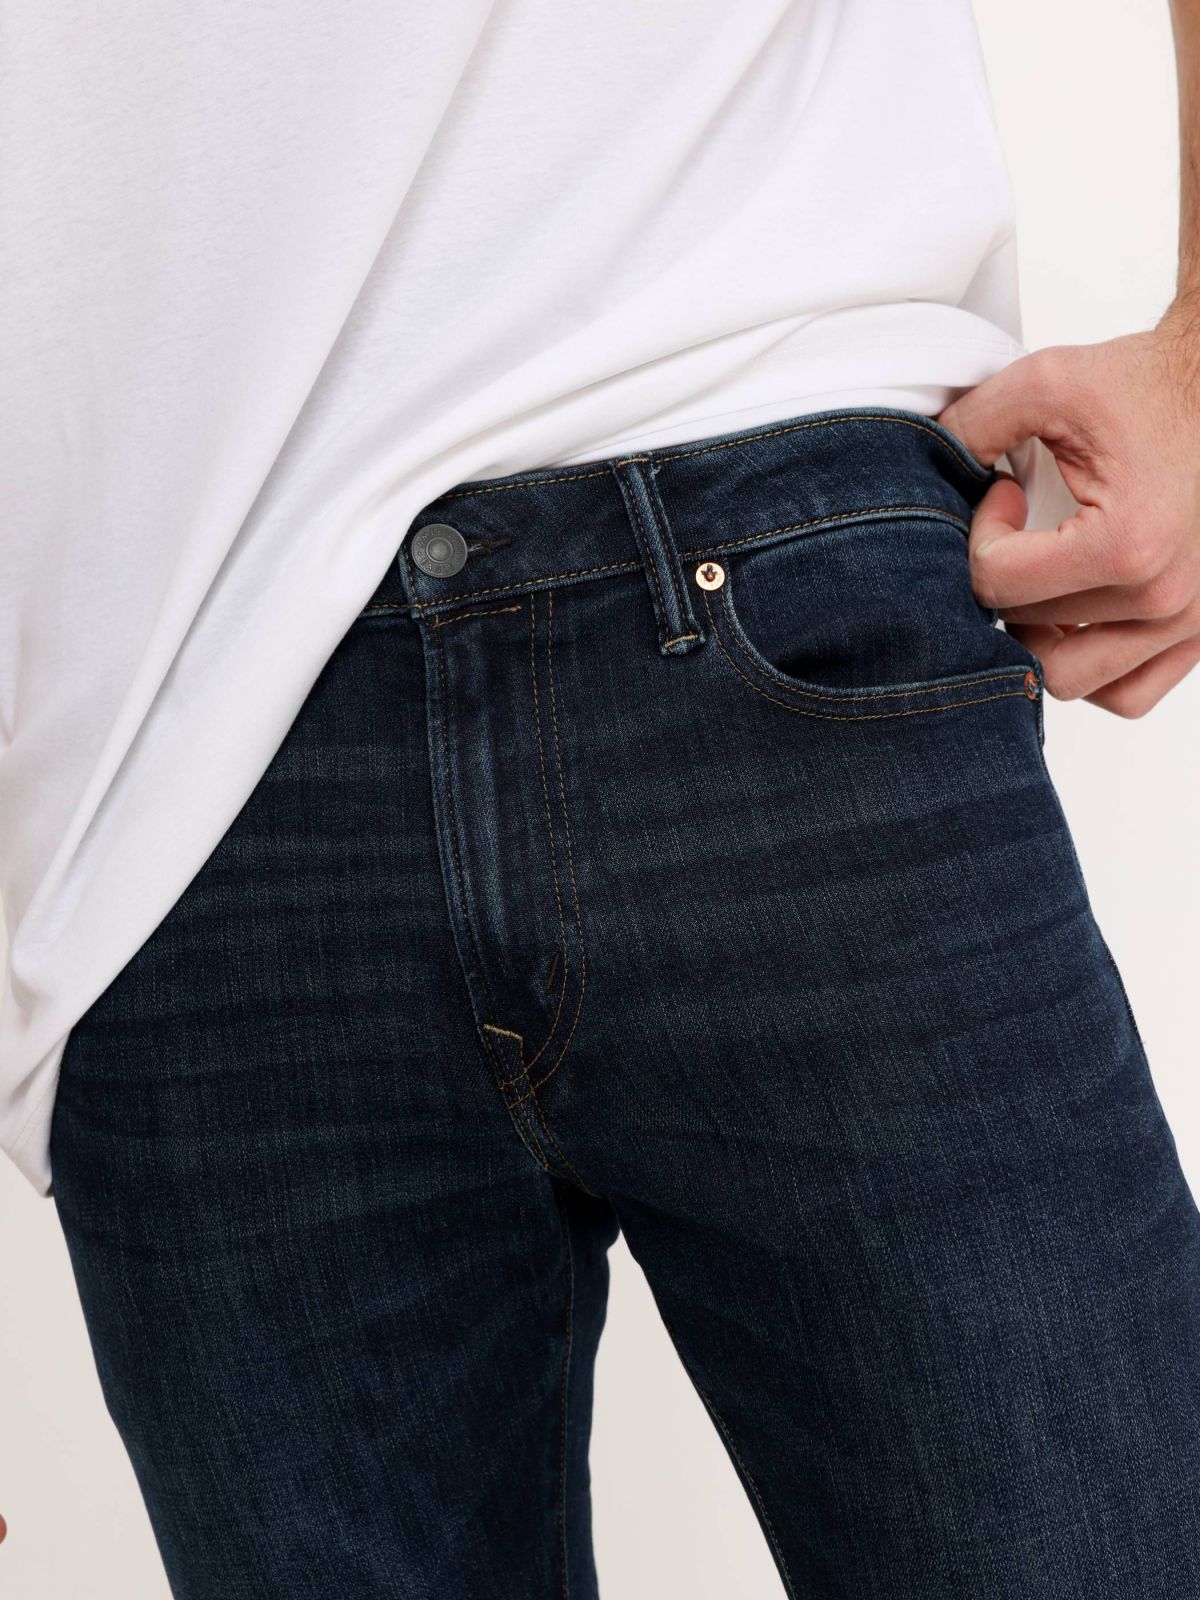  ג'ינס ארוך בשטיפה כהה של AMERICAN EAGLE